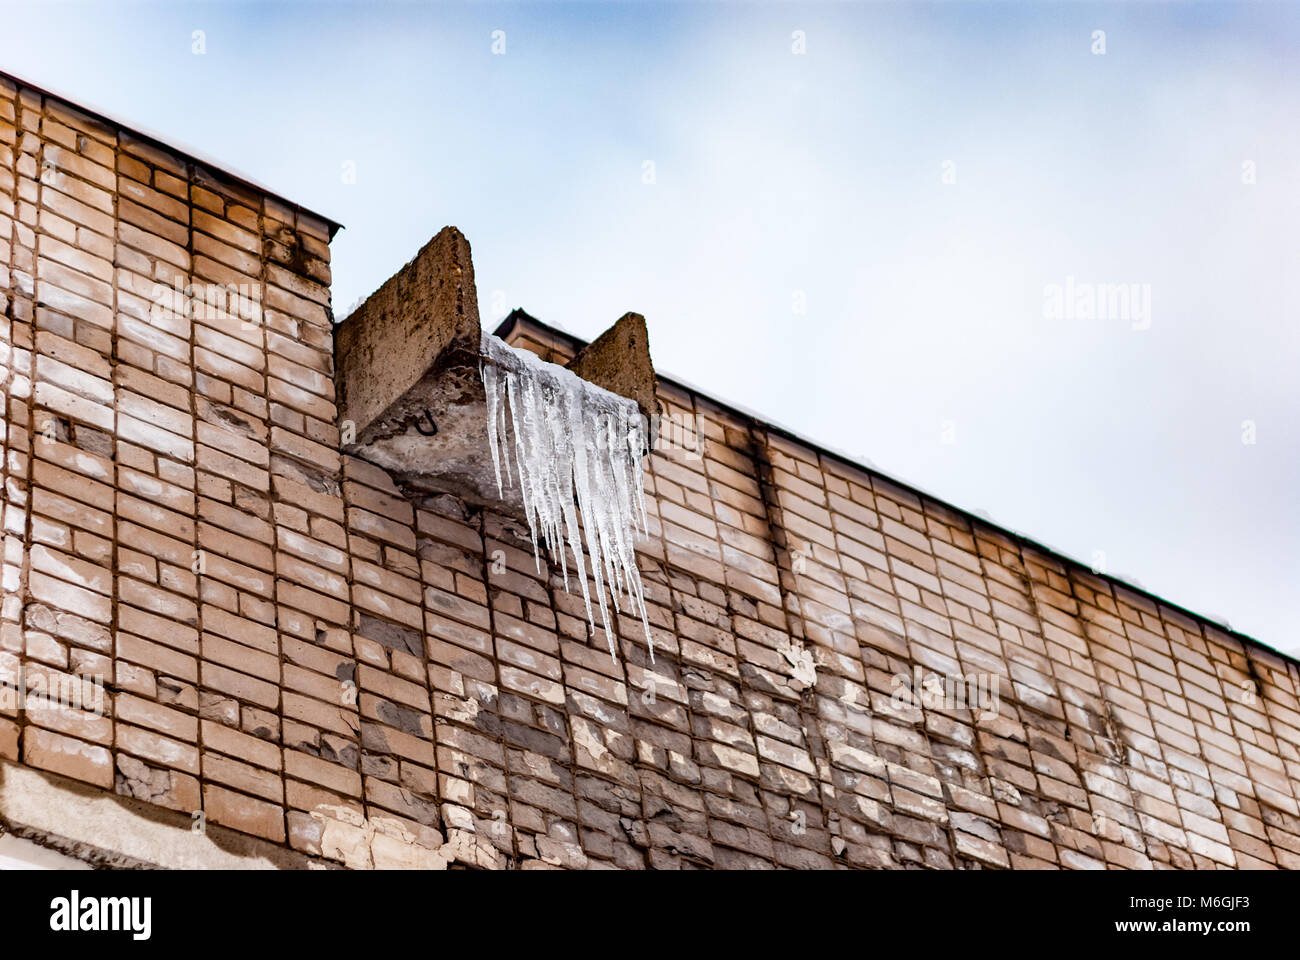 Gefrorene Eiszapfen hängen an einem Betontrog auf einer alten Ziegelmauer, Überreste der Winterkälte Stockfoto